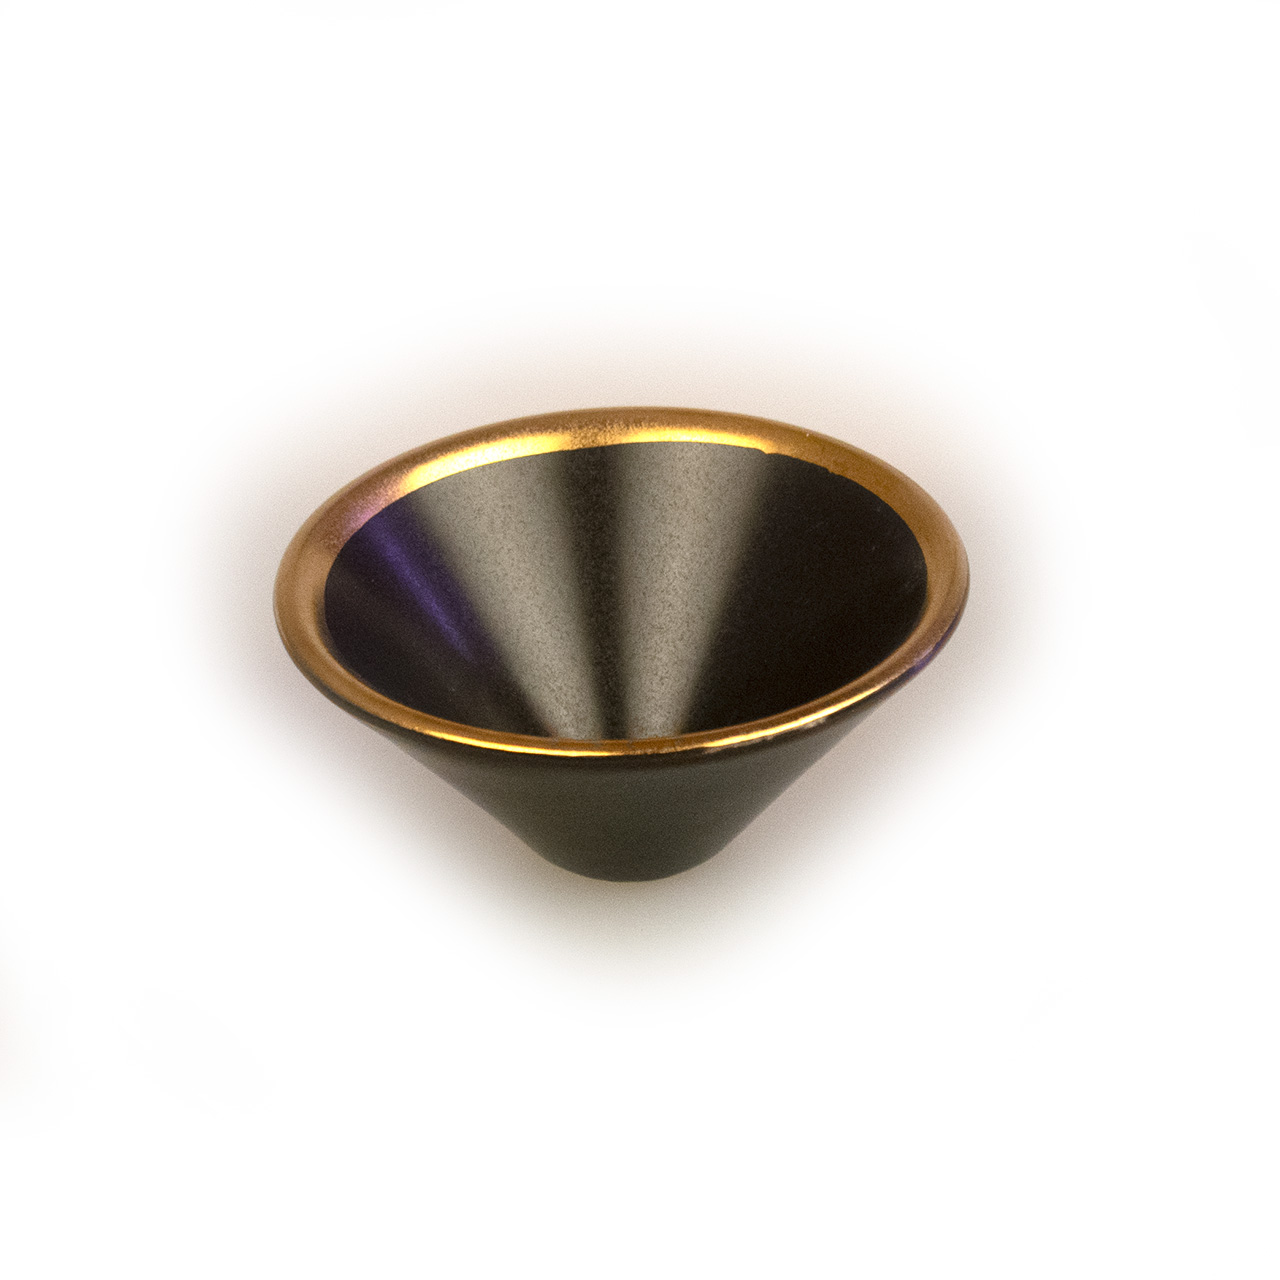 Räucherschale in schwarz mit Goldrand aus Keramik